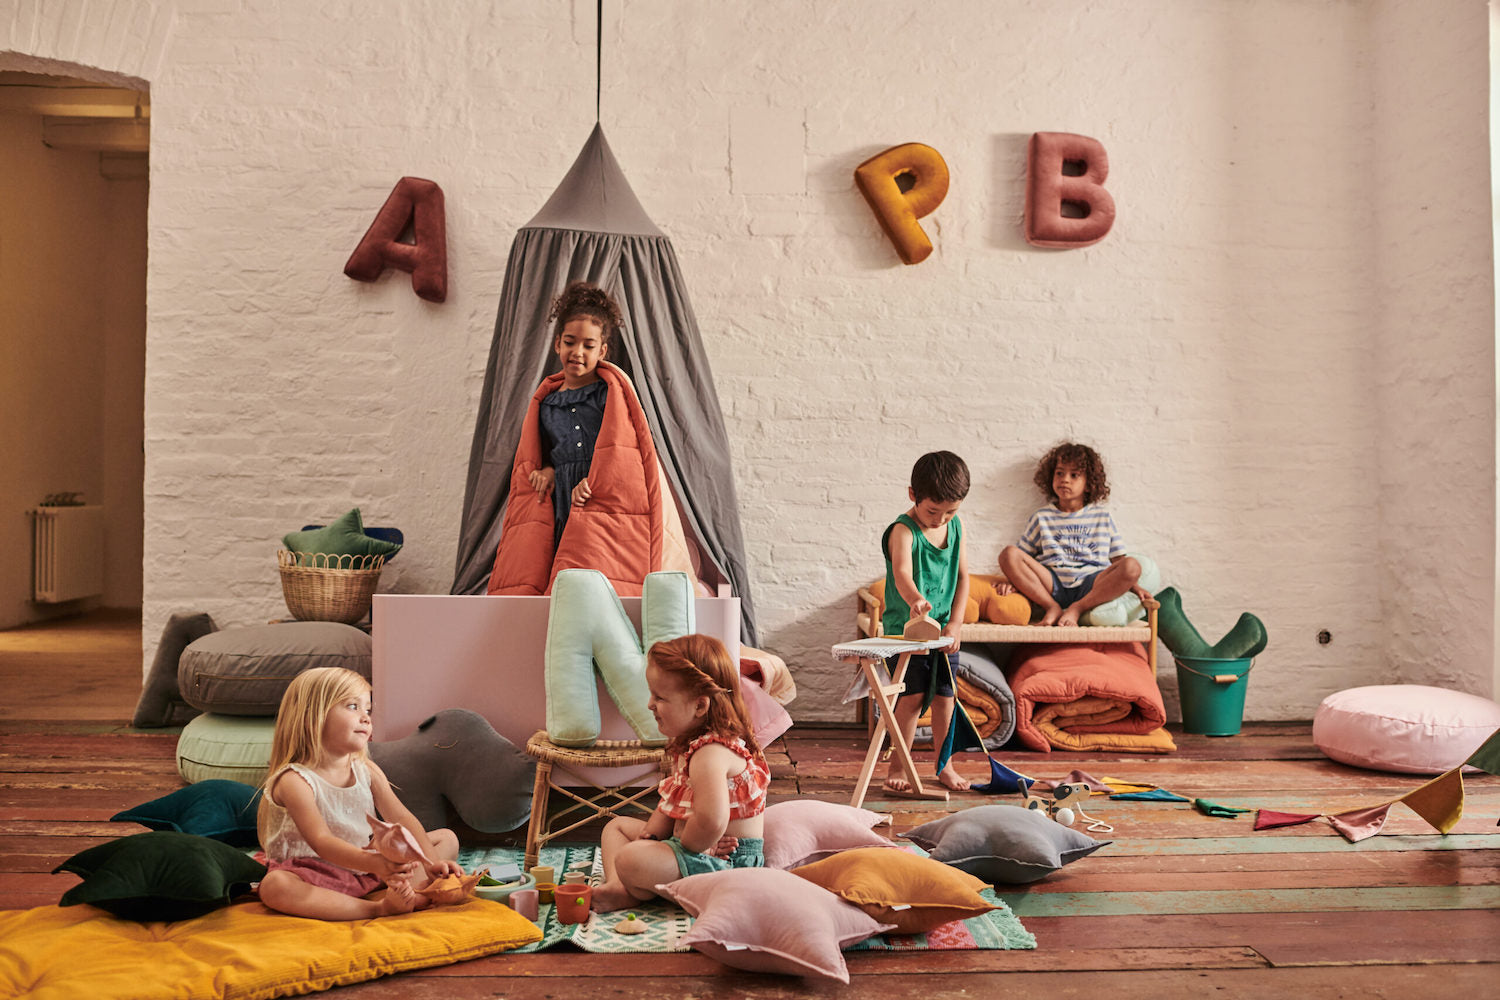 dziewczynki siedzące na podłodze obok poduszek w kształcie gwiazdki a na ścianie są powieszone poduszki w kształcie liter